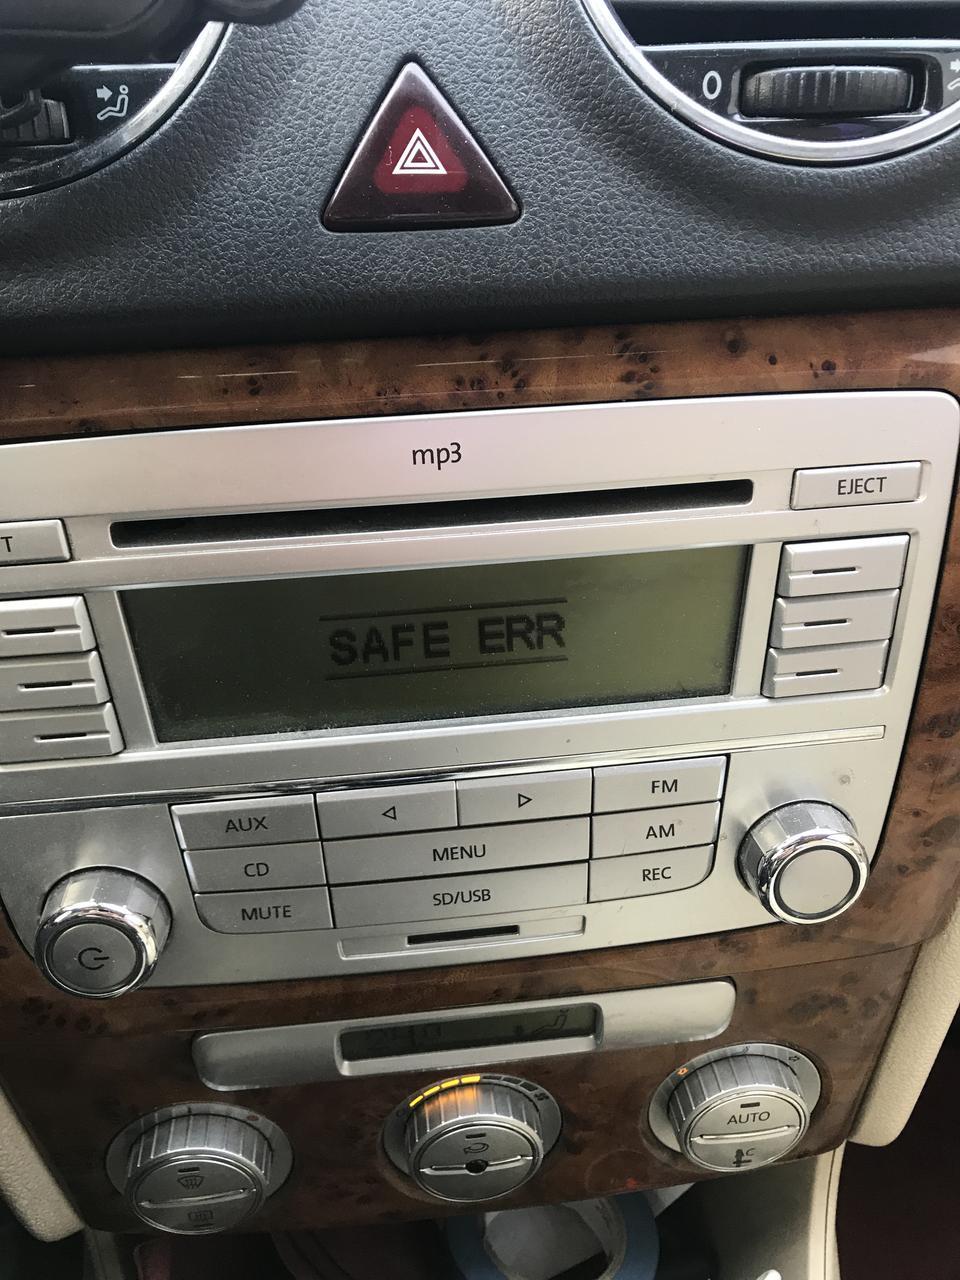 08年朗逸收音机出现safe err 如何解决。大佬们。去四儿子店没用